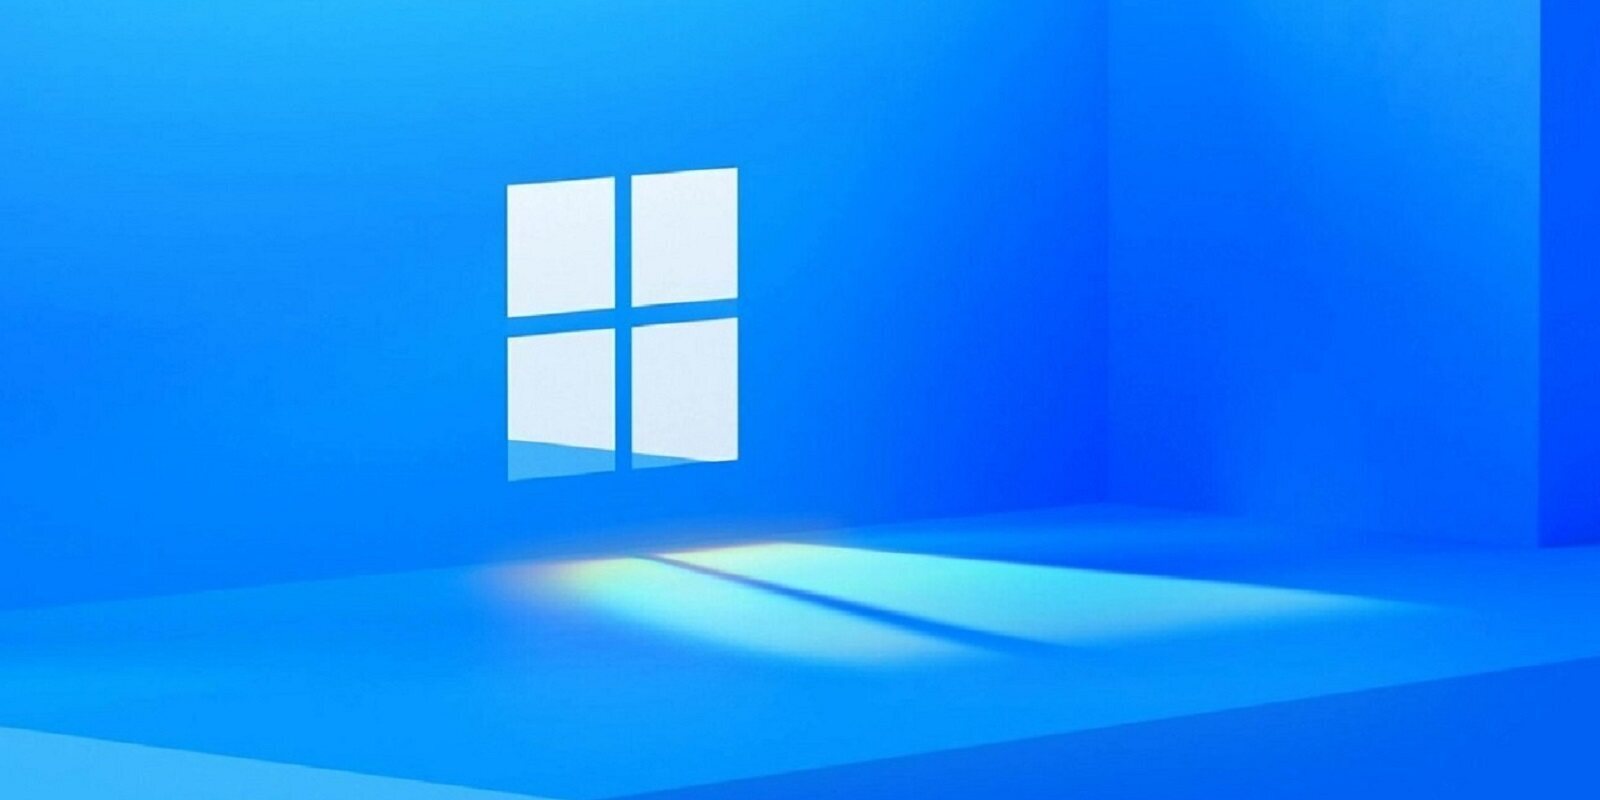 Los anuncios de Windows 11 que se colaron en File Explorer son un error, según Microsoft